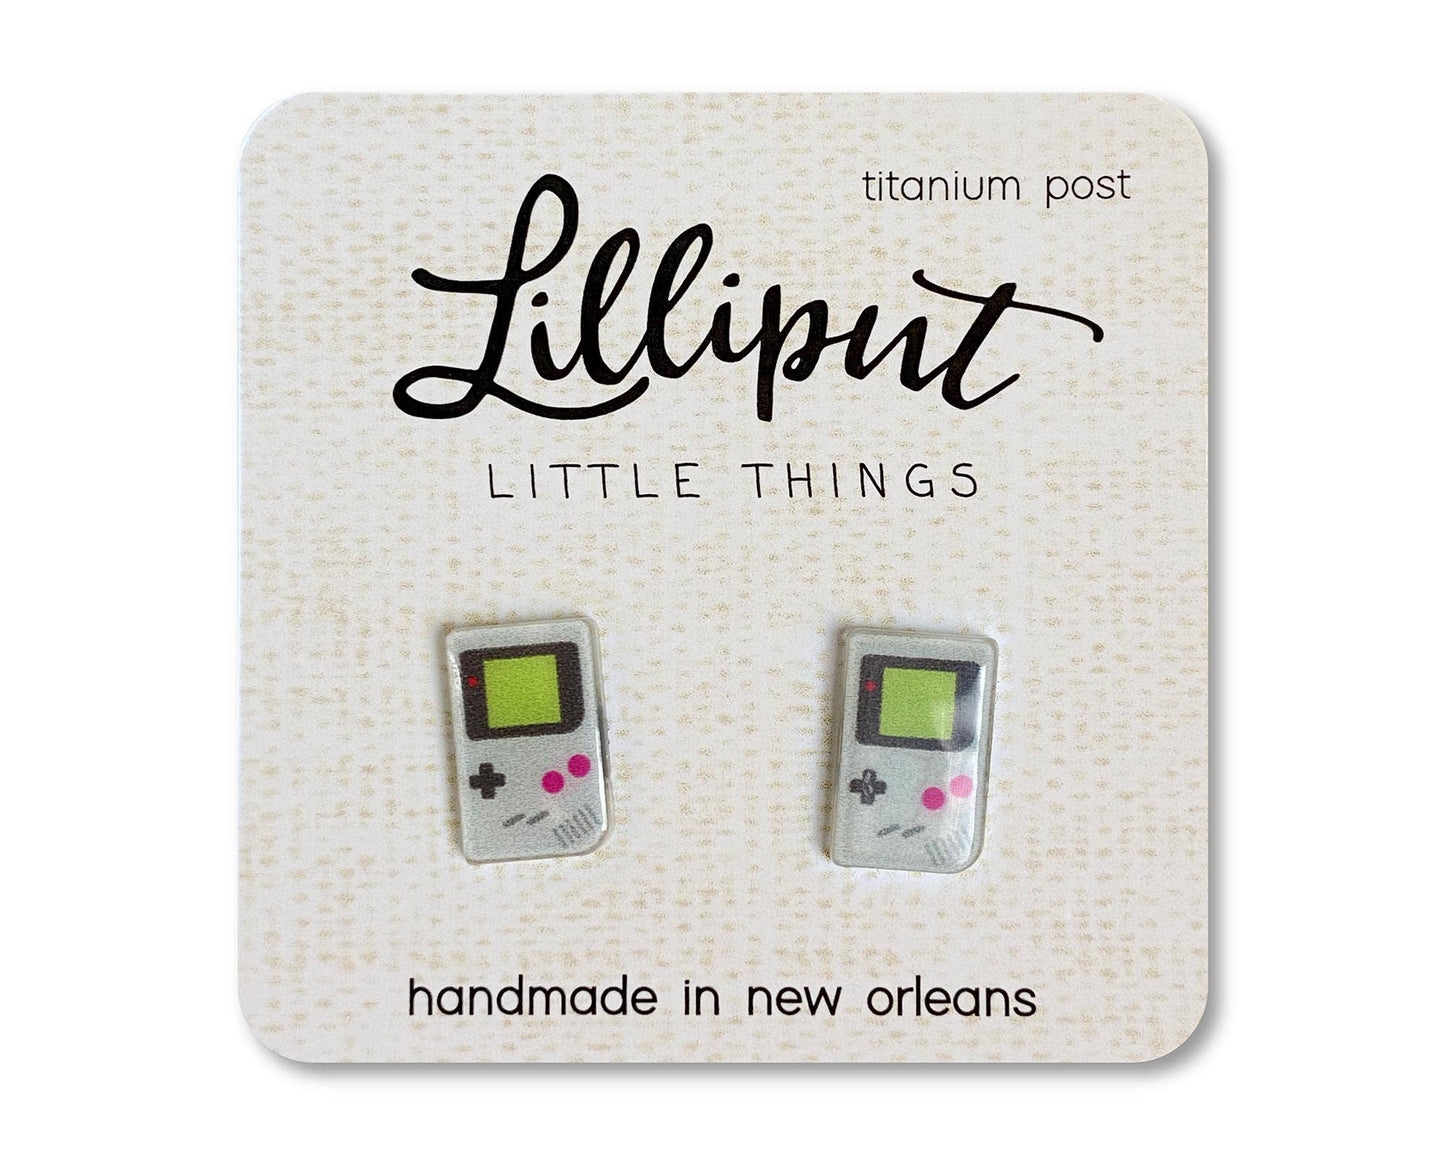 Lilliput Little Things Earrings: Retro Handheld Video Game